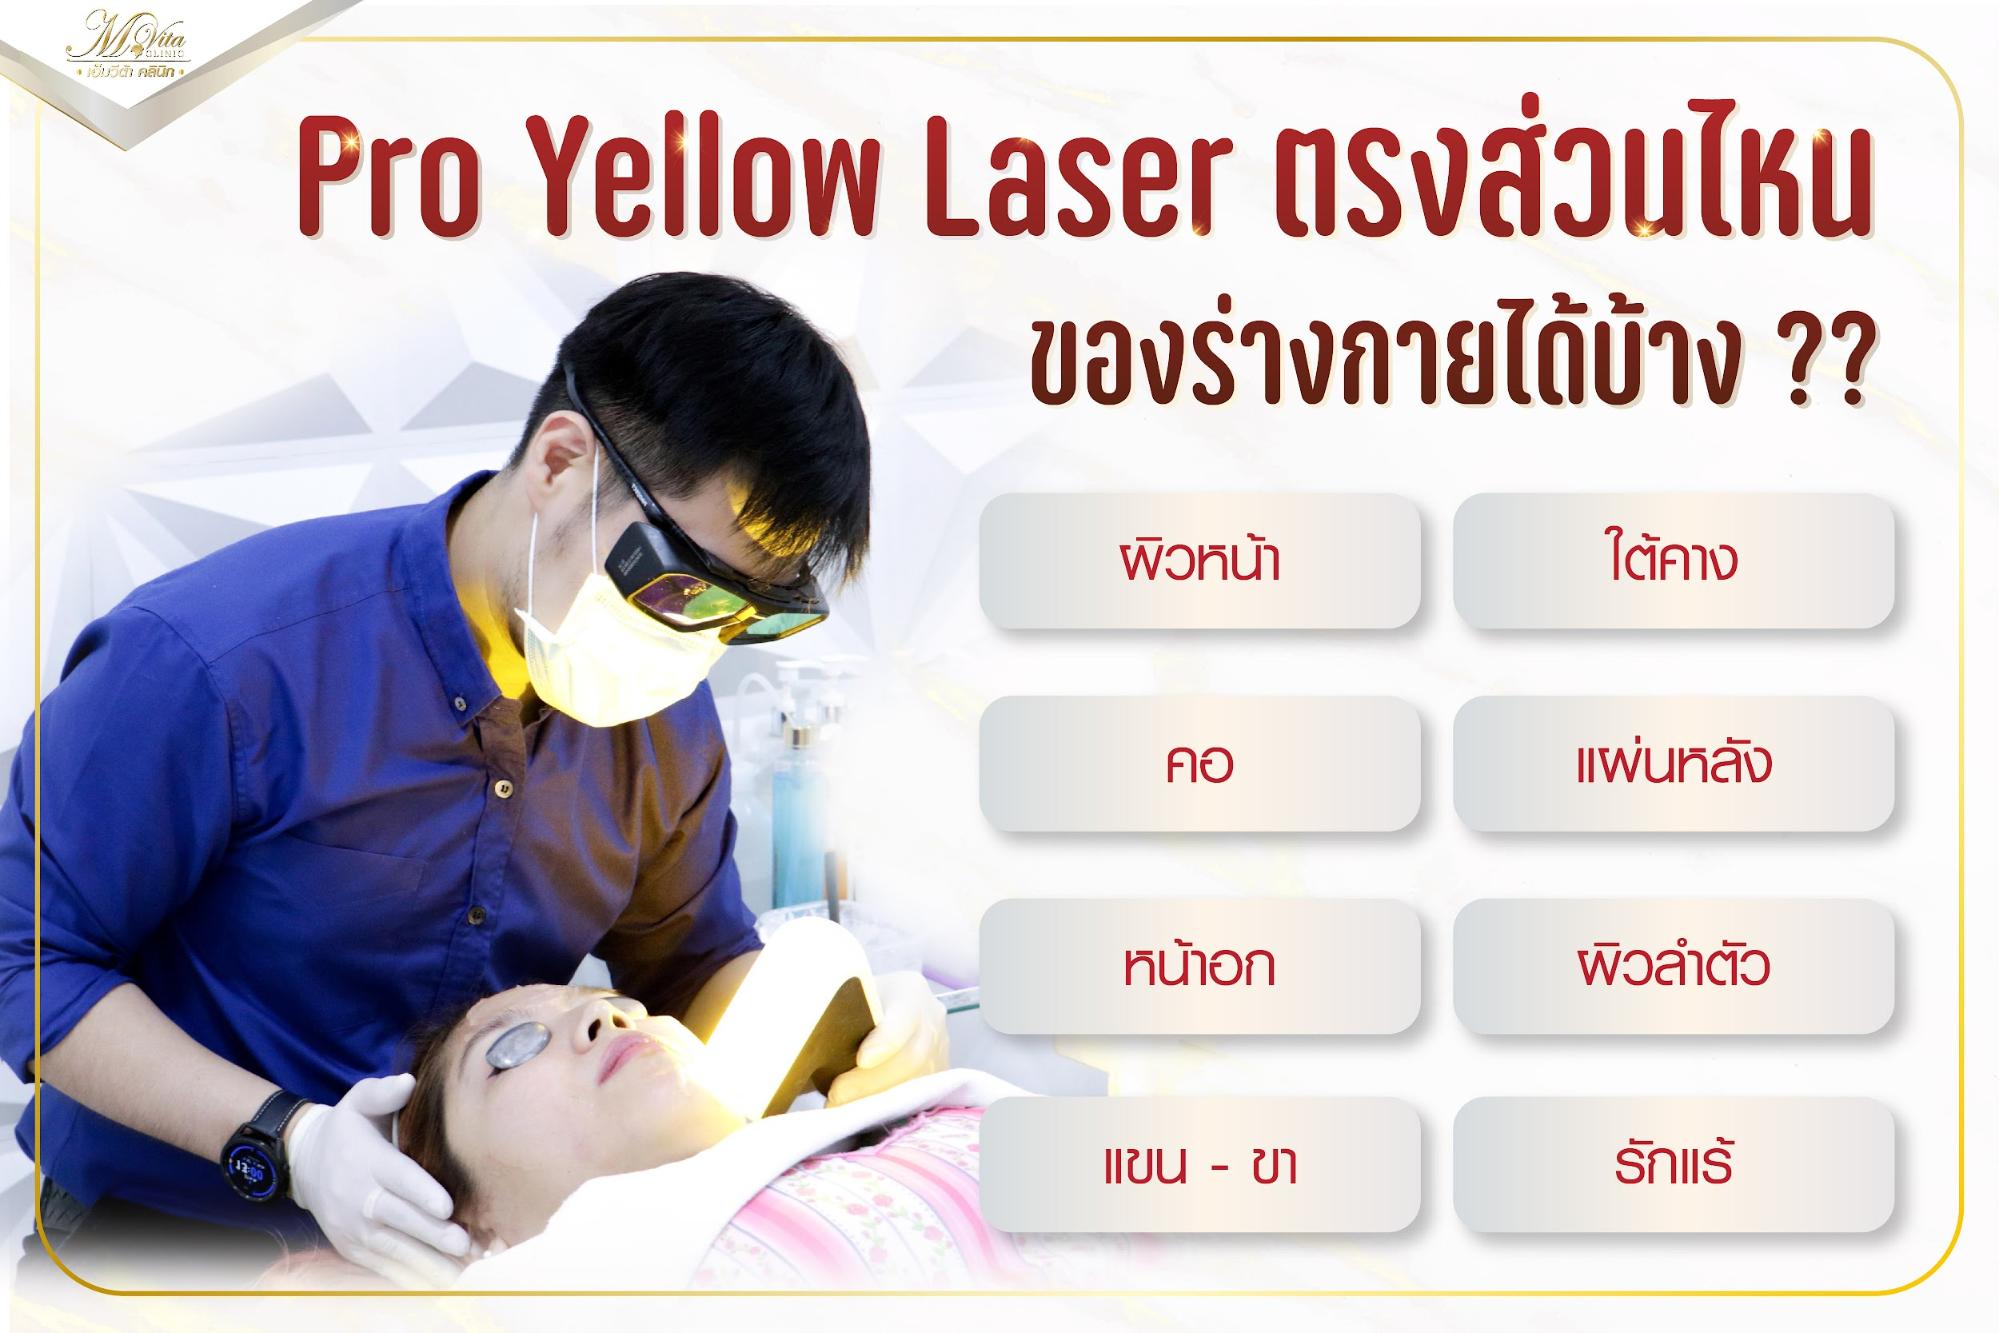 Pro Yellow Laser คือ